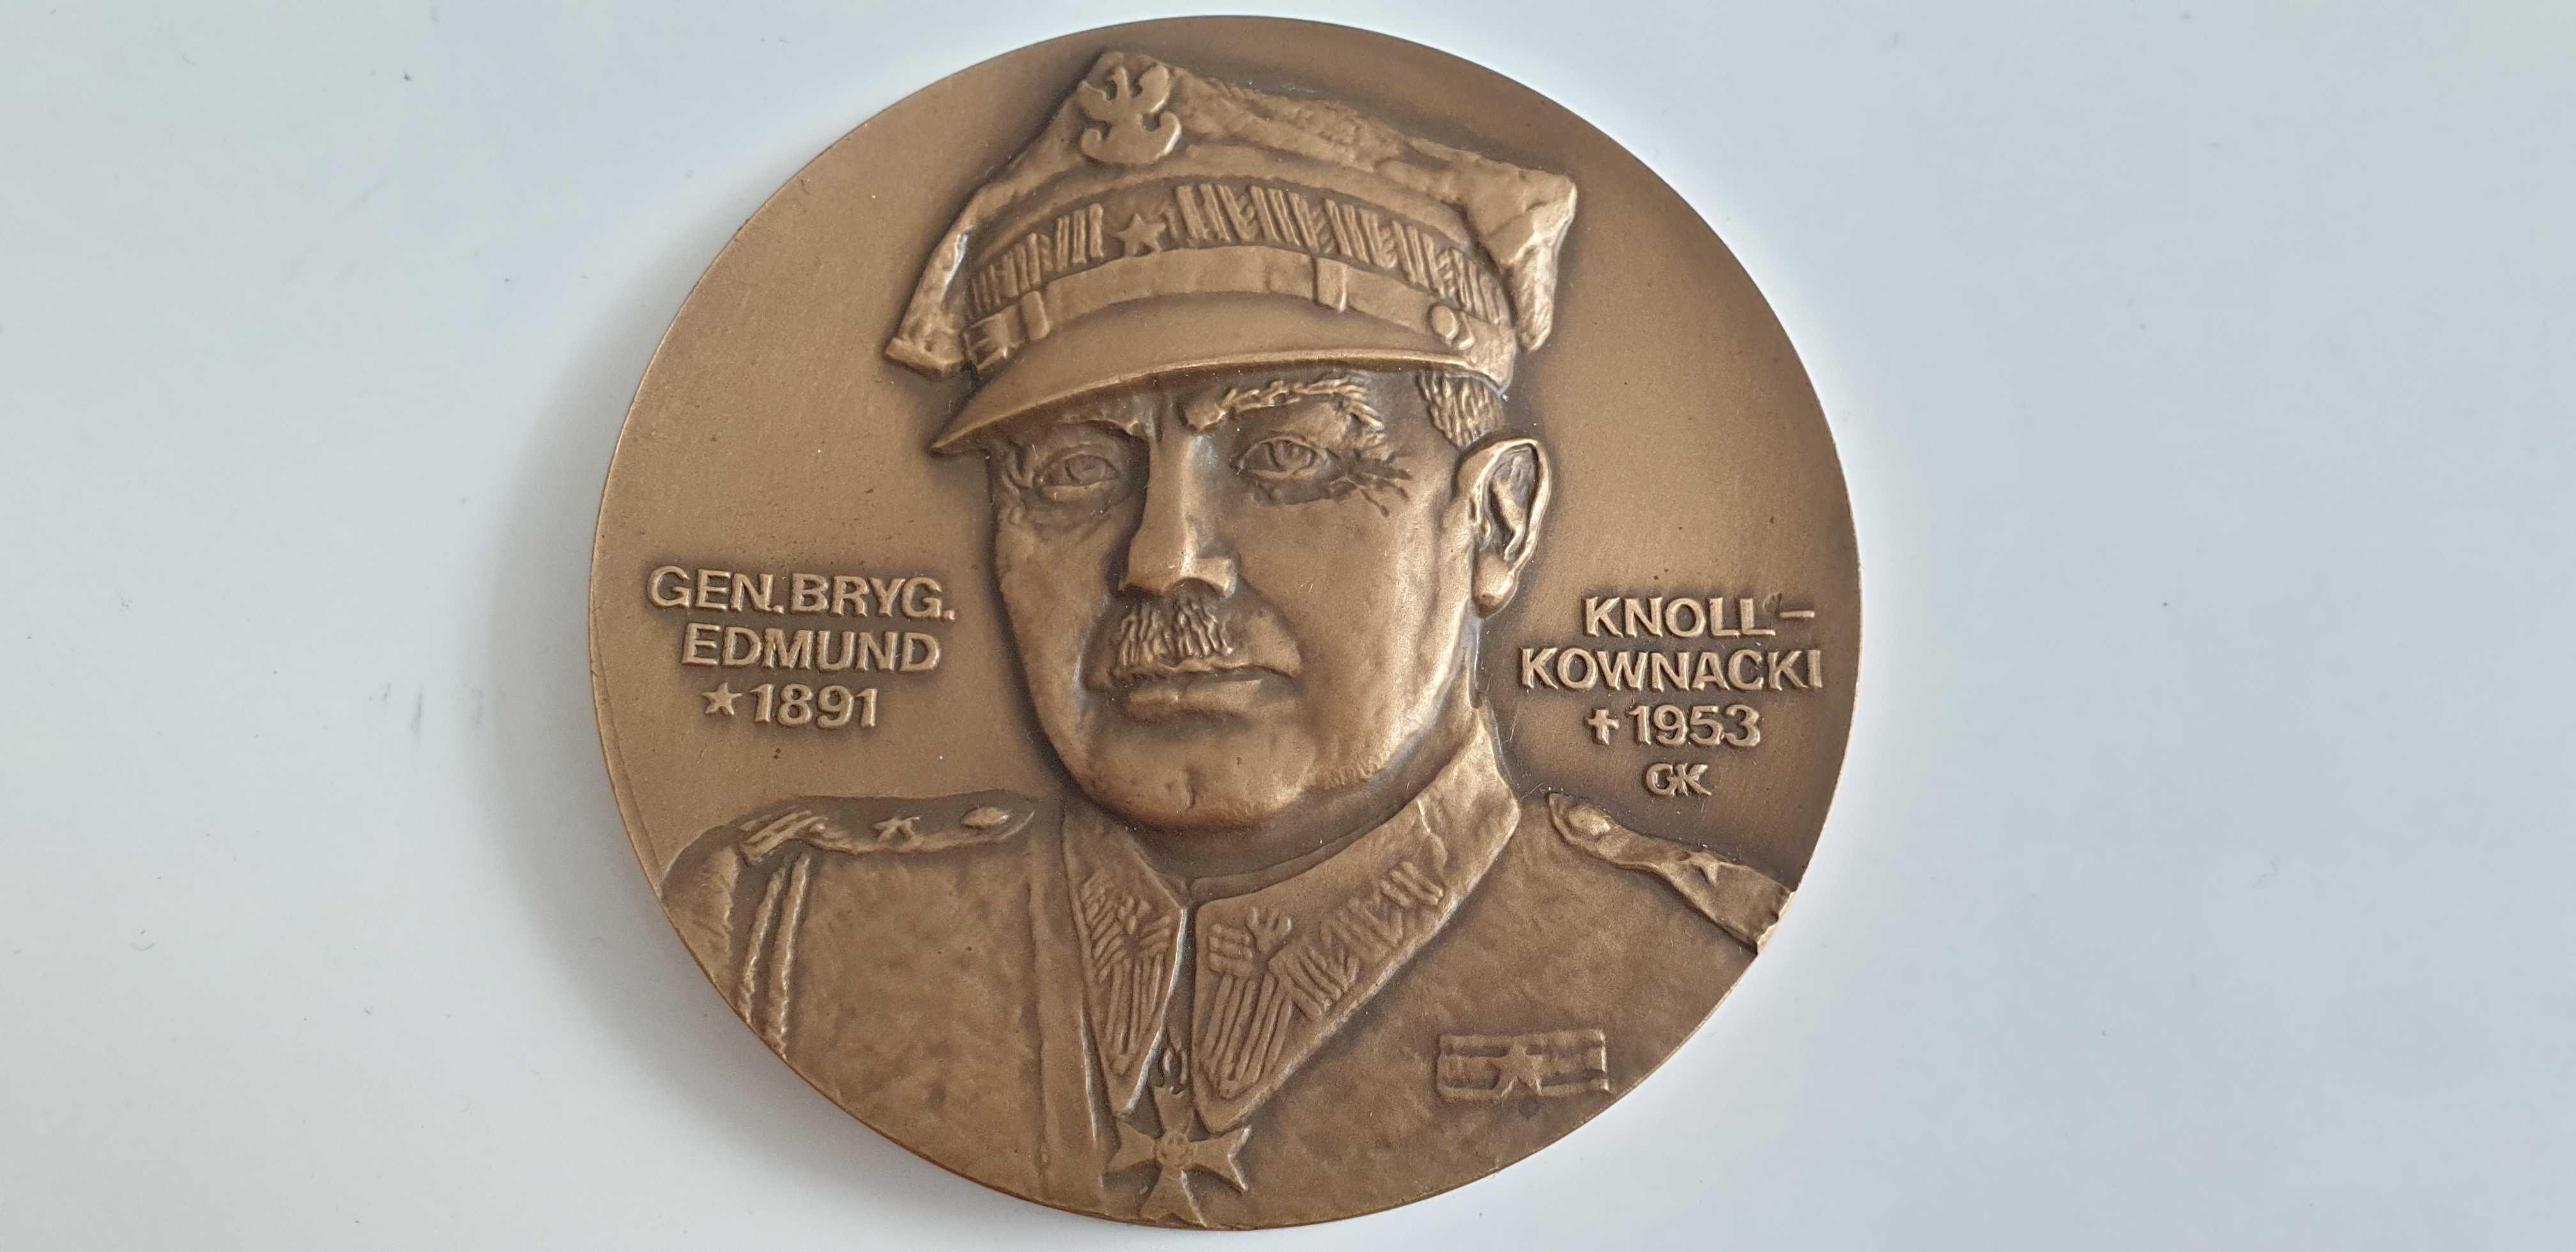 Starocie z Gdyni - Medal Polski numer 1 do rozpoznania